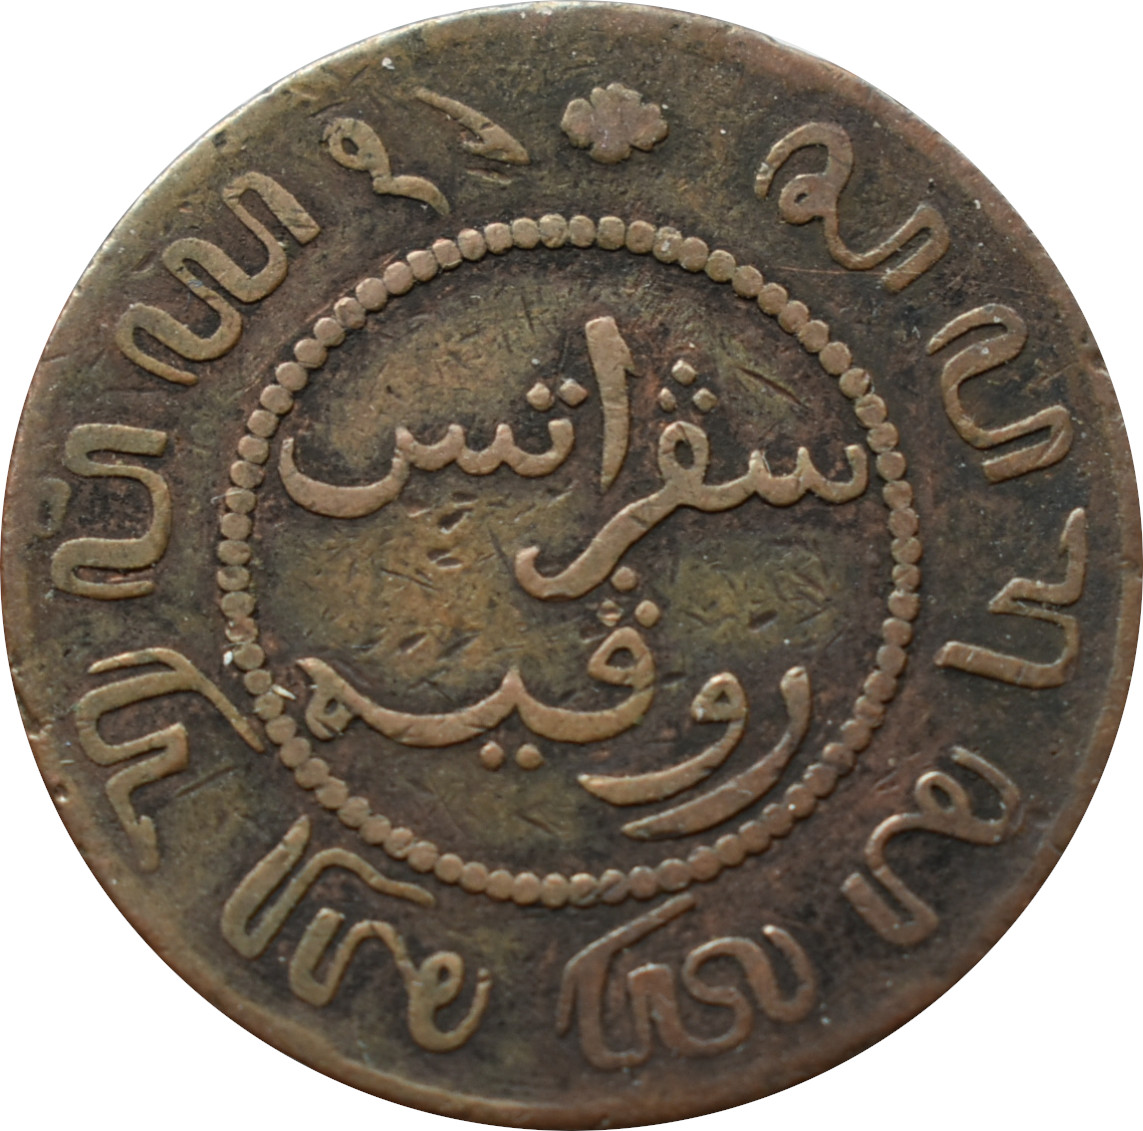 Holandská východná India 1 cent 1858